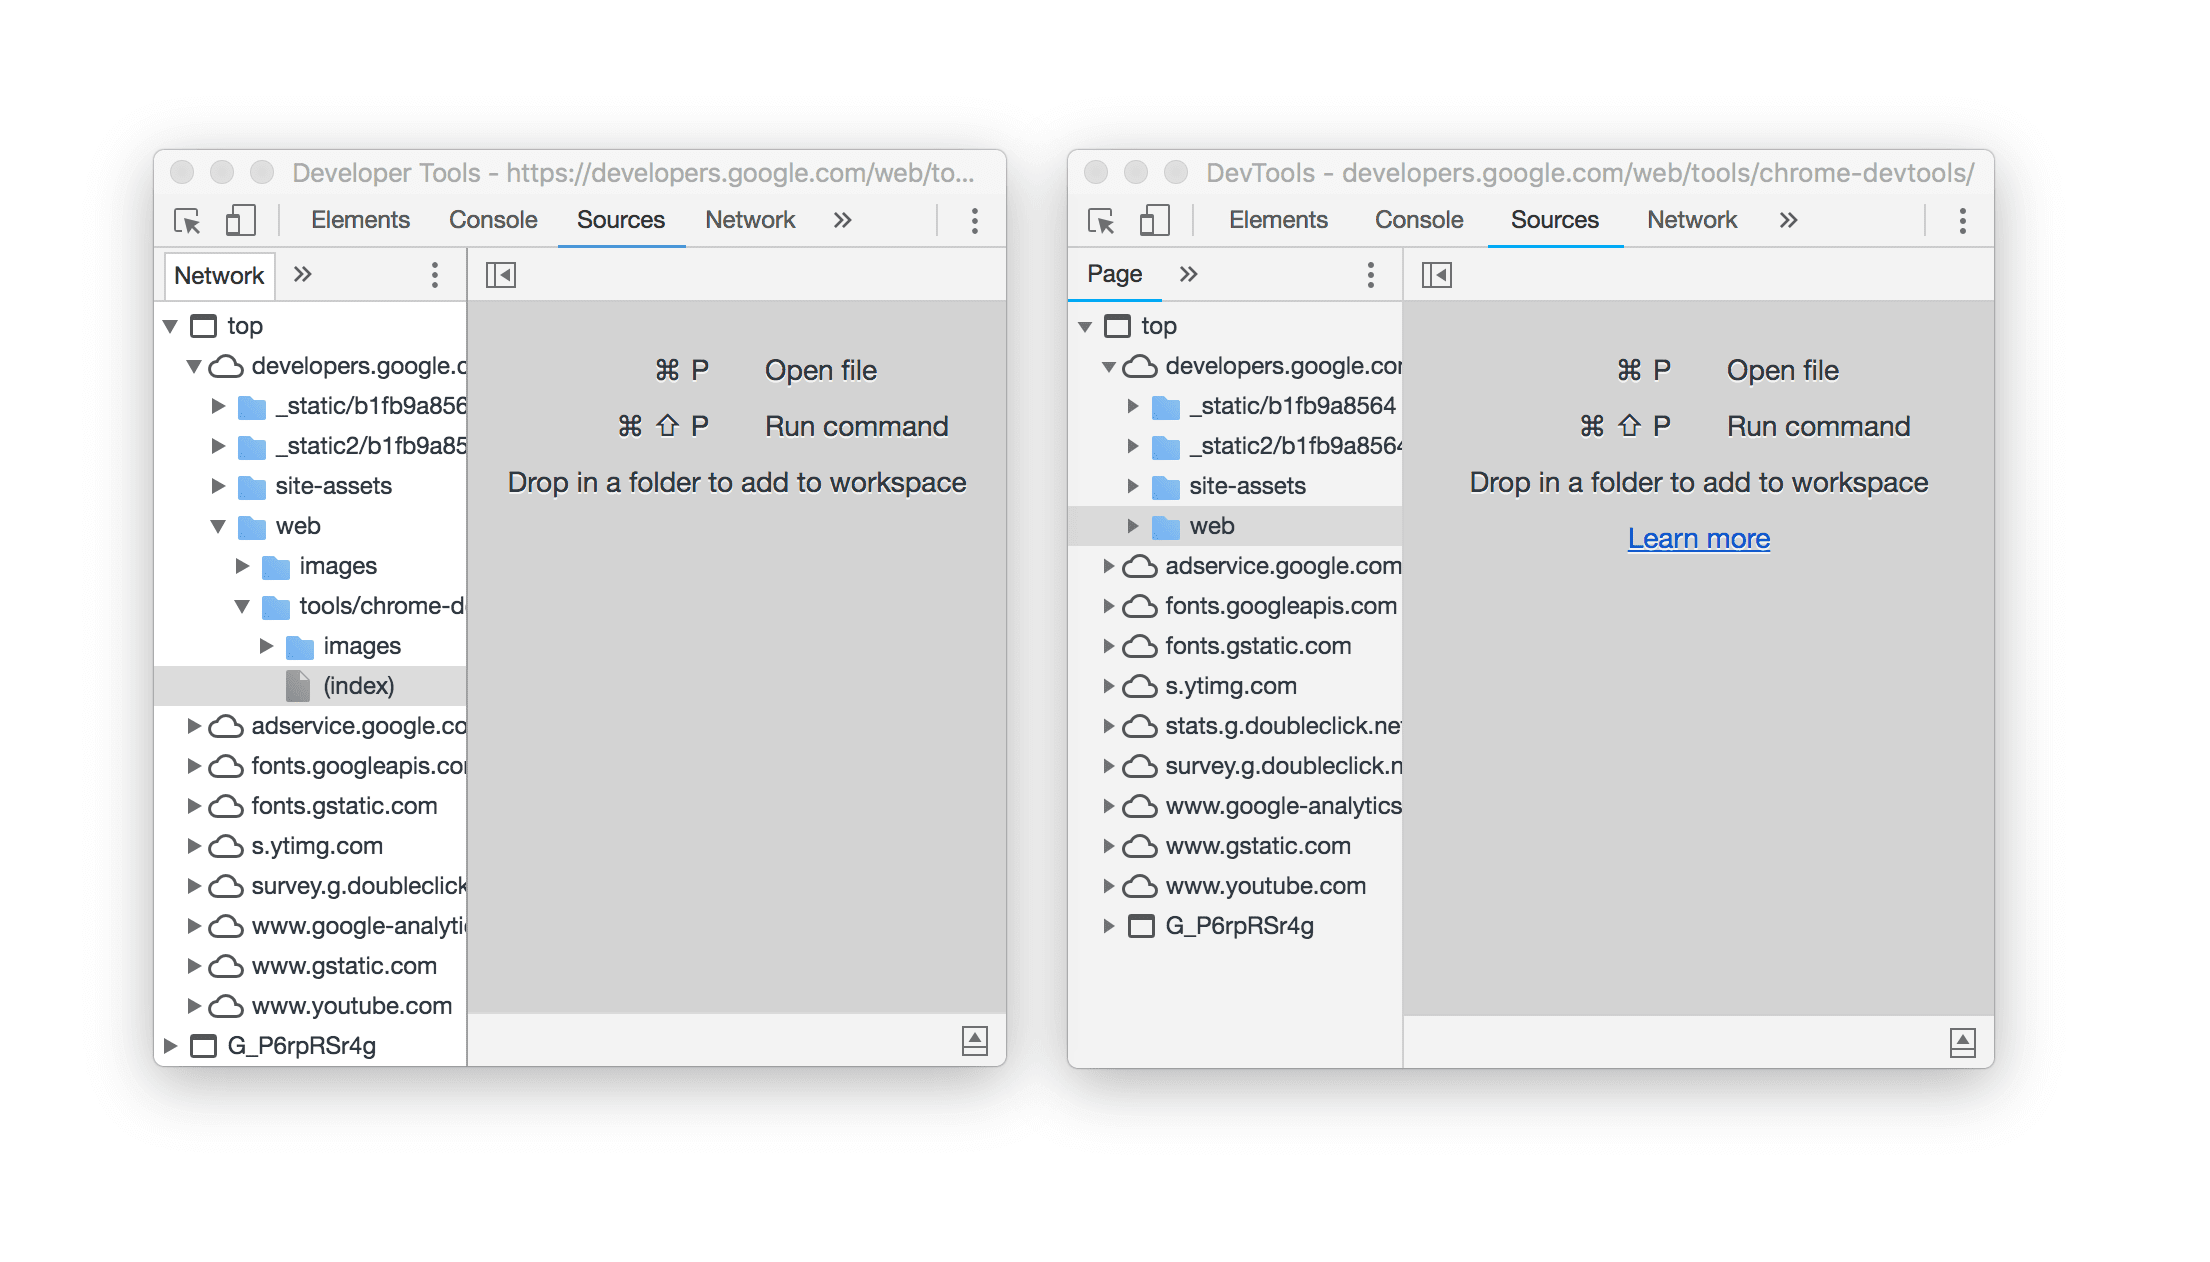 หน้าต่างเครื่องมือสำหรับนักพัฒนาเว็บ 2 หน้าต่างอยู่เคียงข้างกันเพื่อแสดงการเปลี่ยนชื่อ